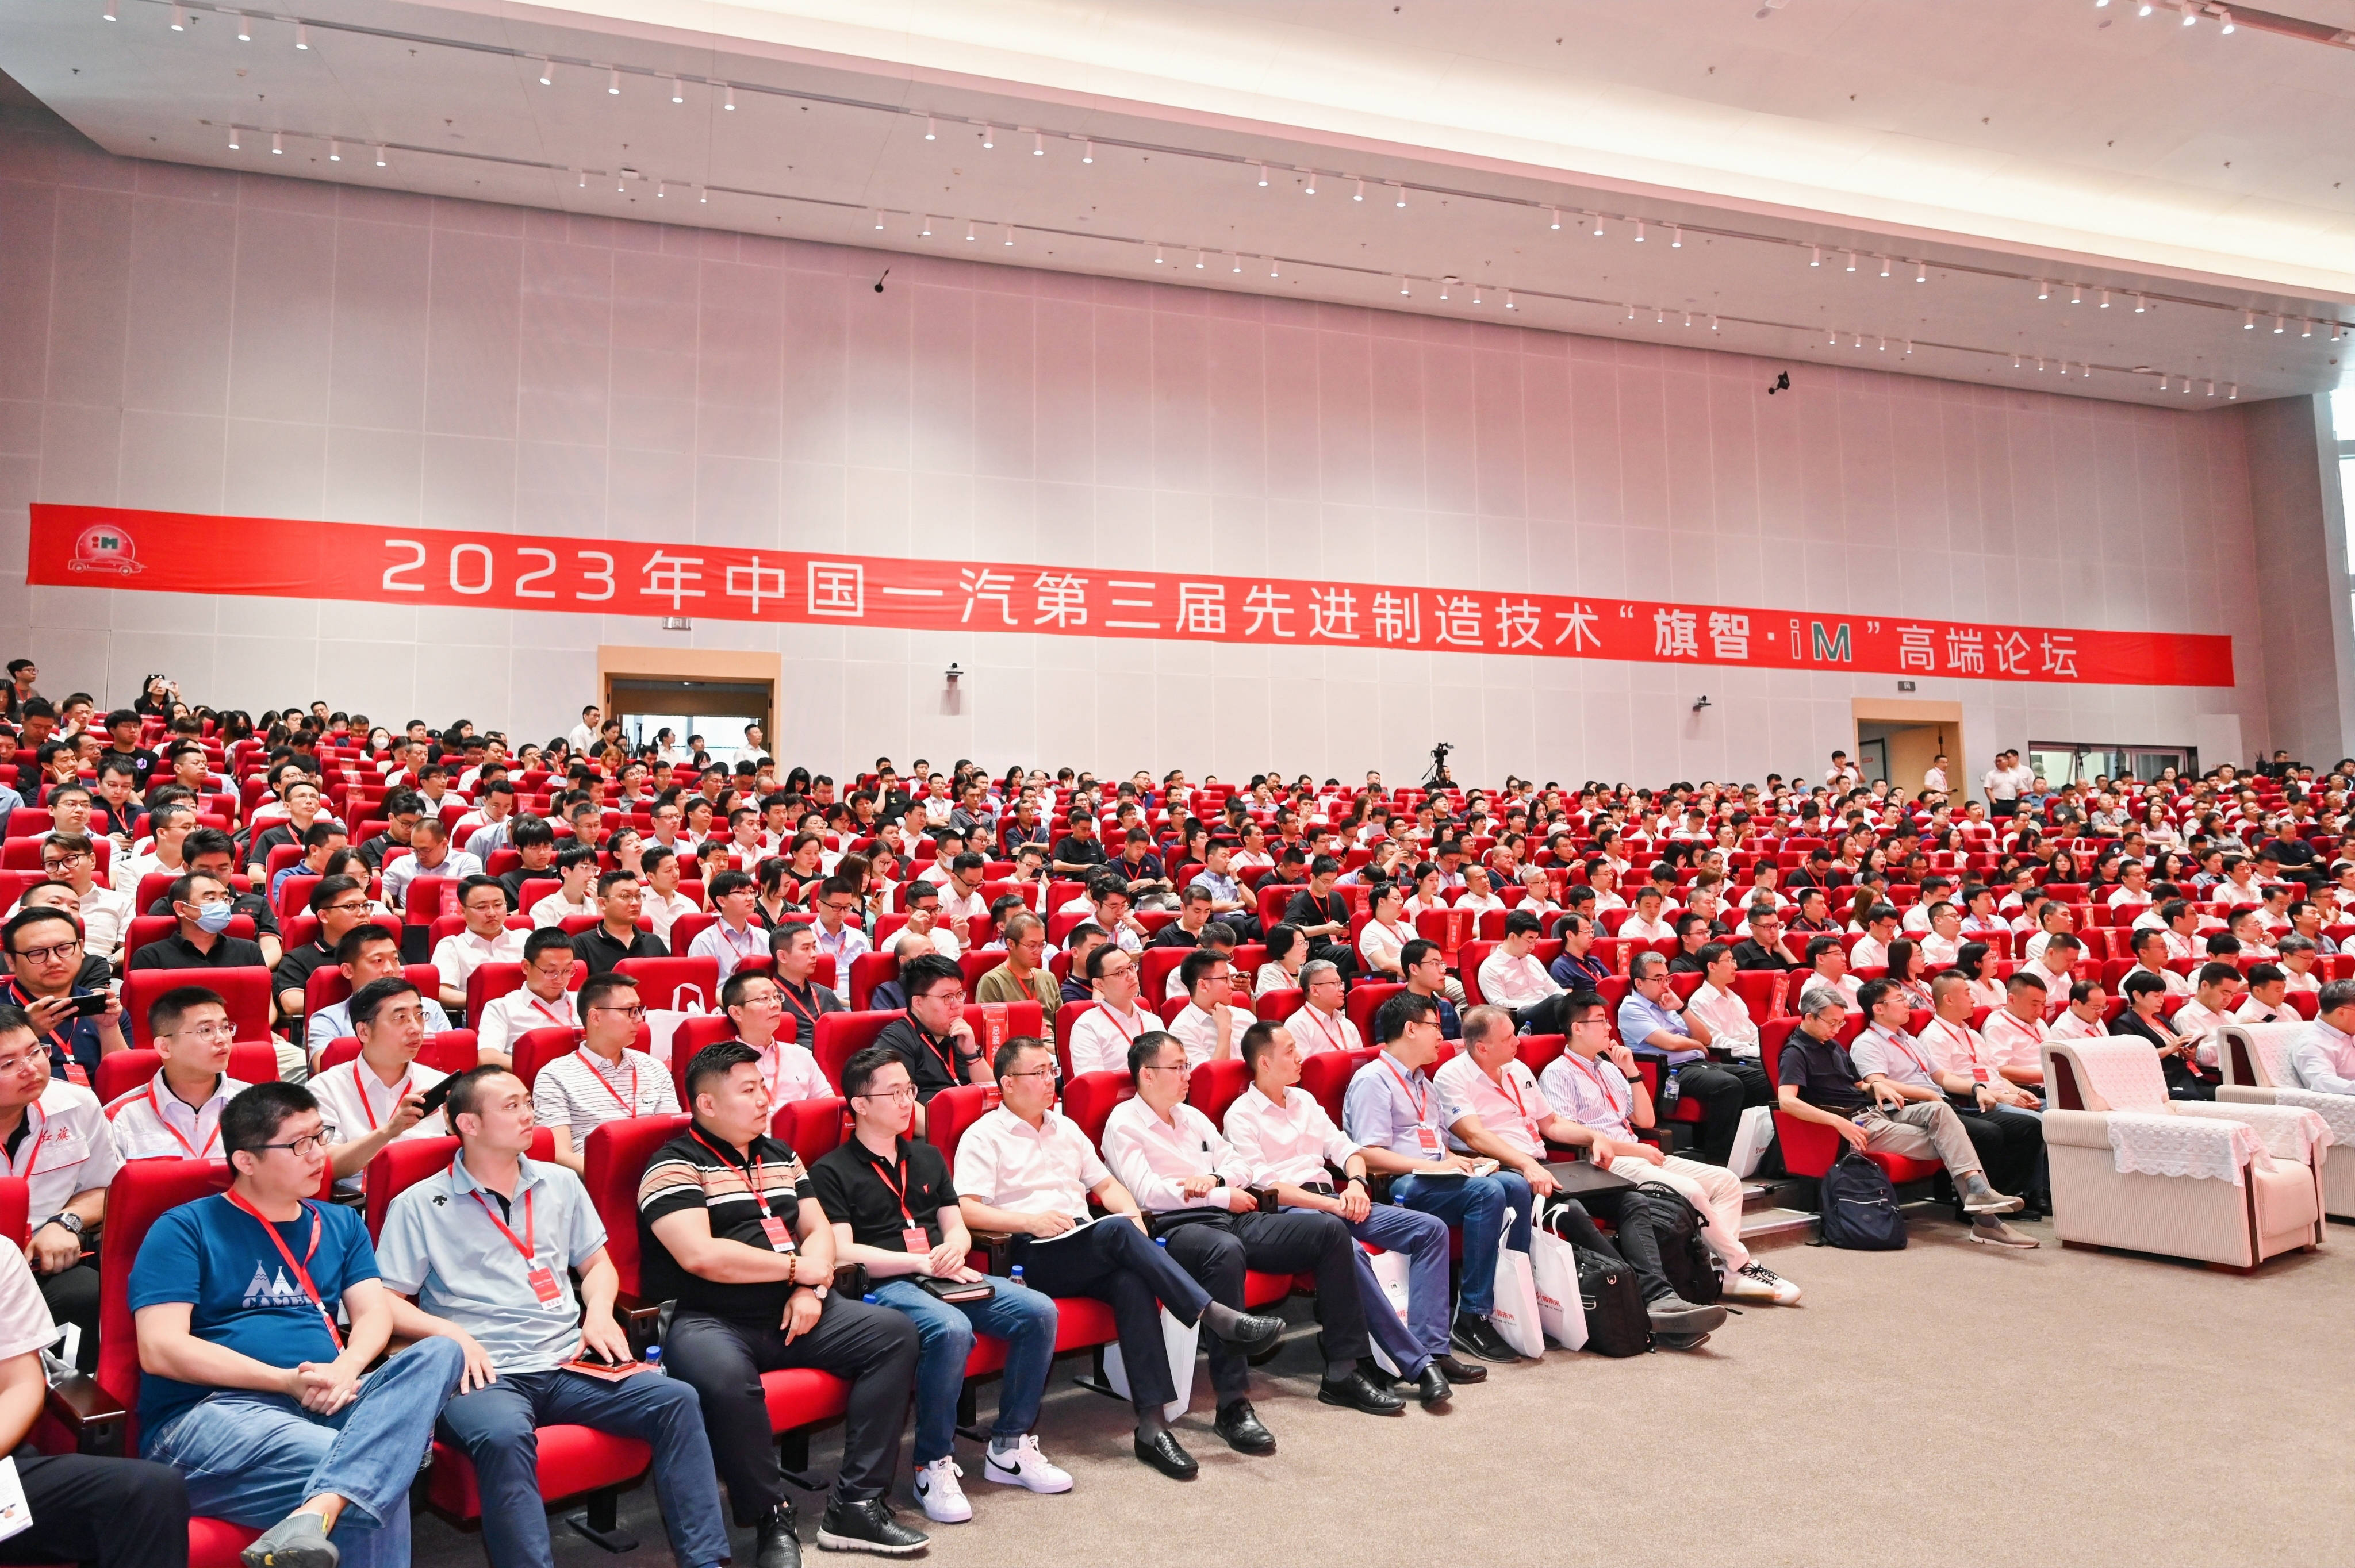 2023年中国一汽第三届先进制造技术“旗智•iM”高端论坛盛大举行